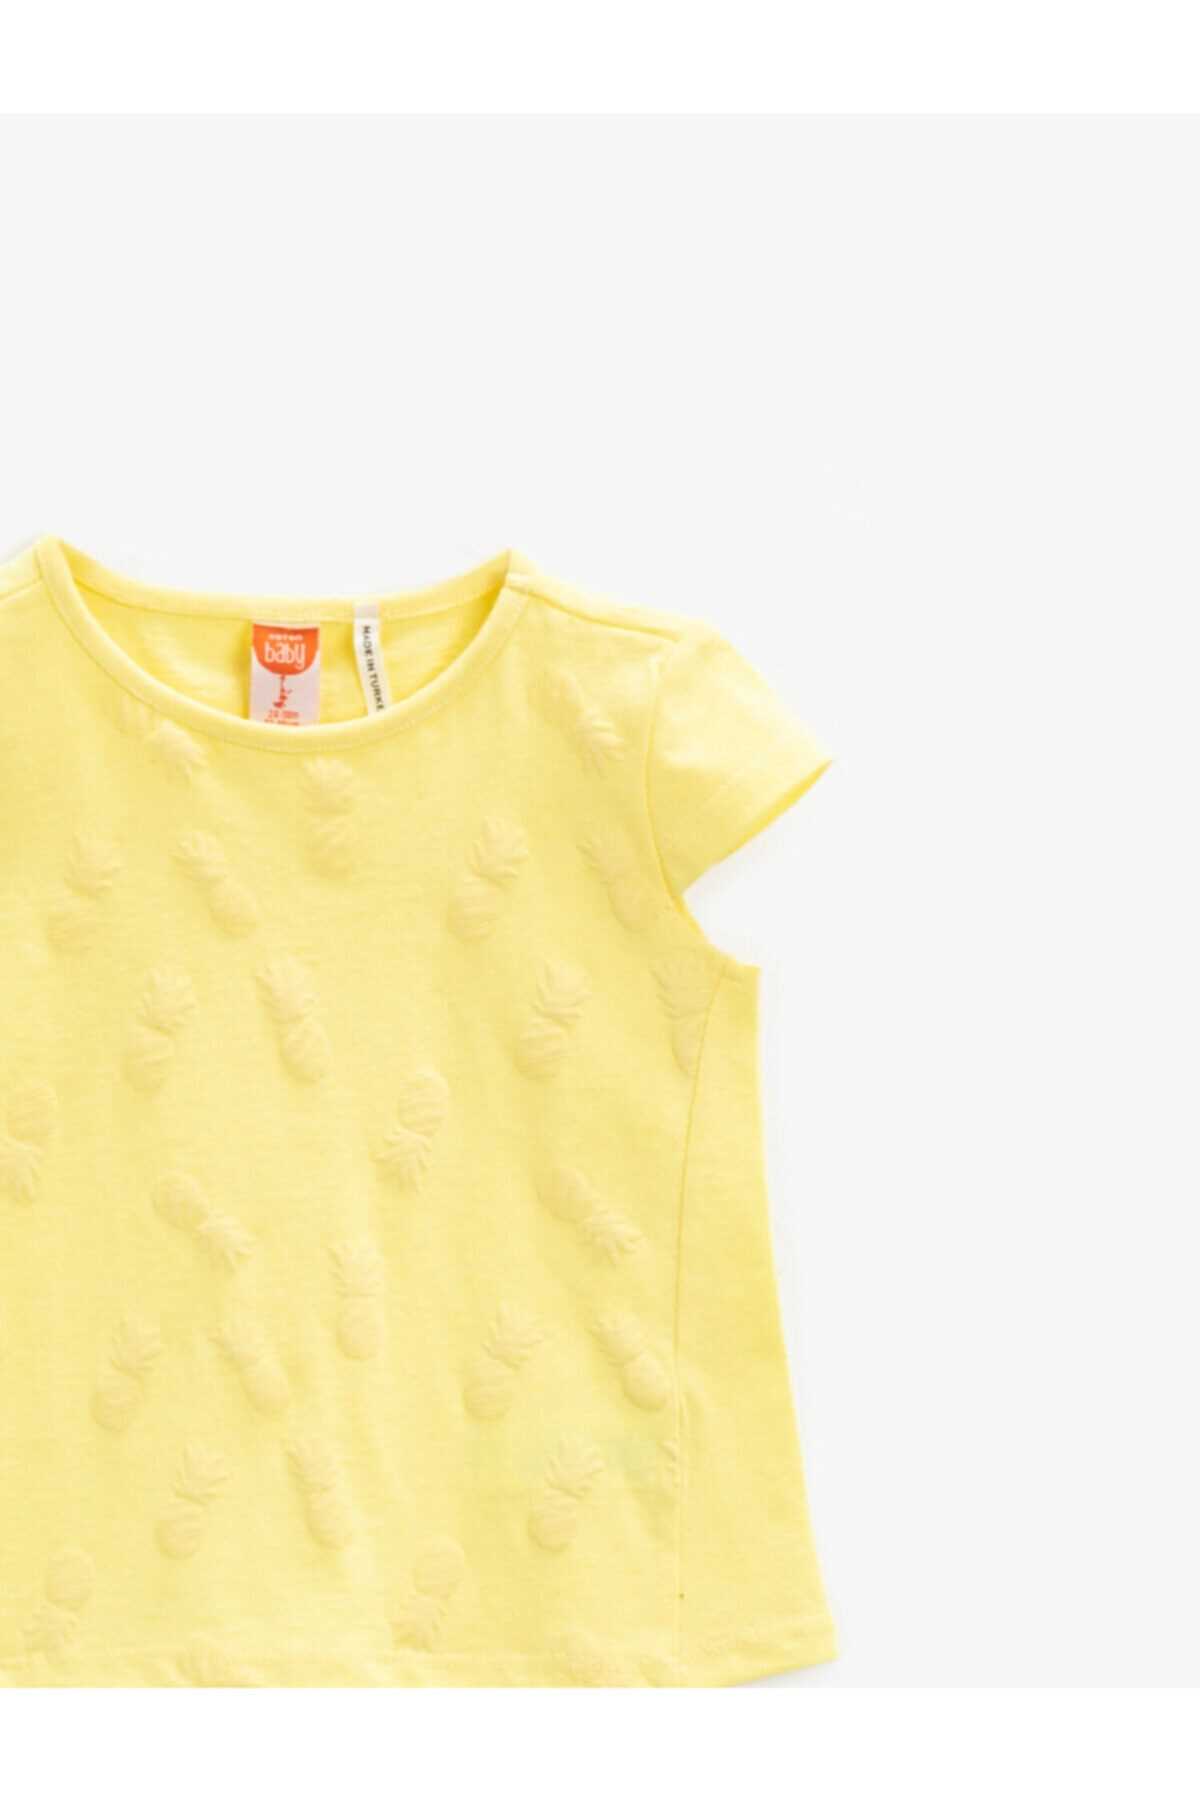 حرید اینترنتی تیشرت نوزاد دخترانه ارزان برند کوتون رنگ زرد ty93604571